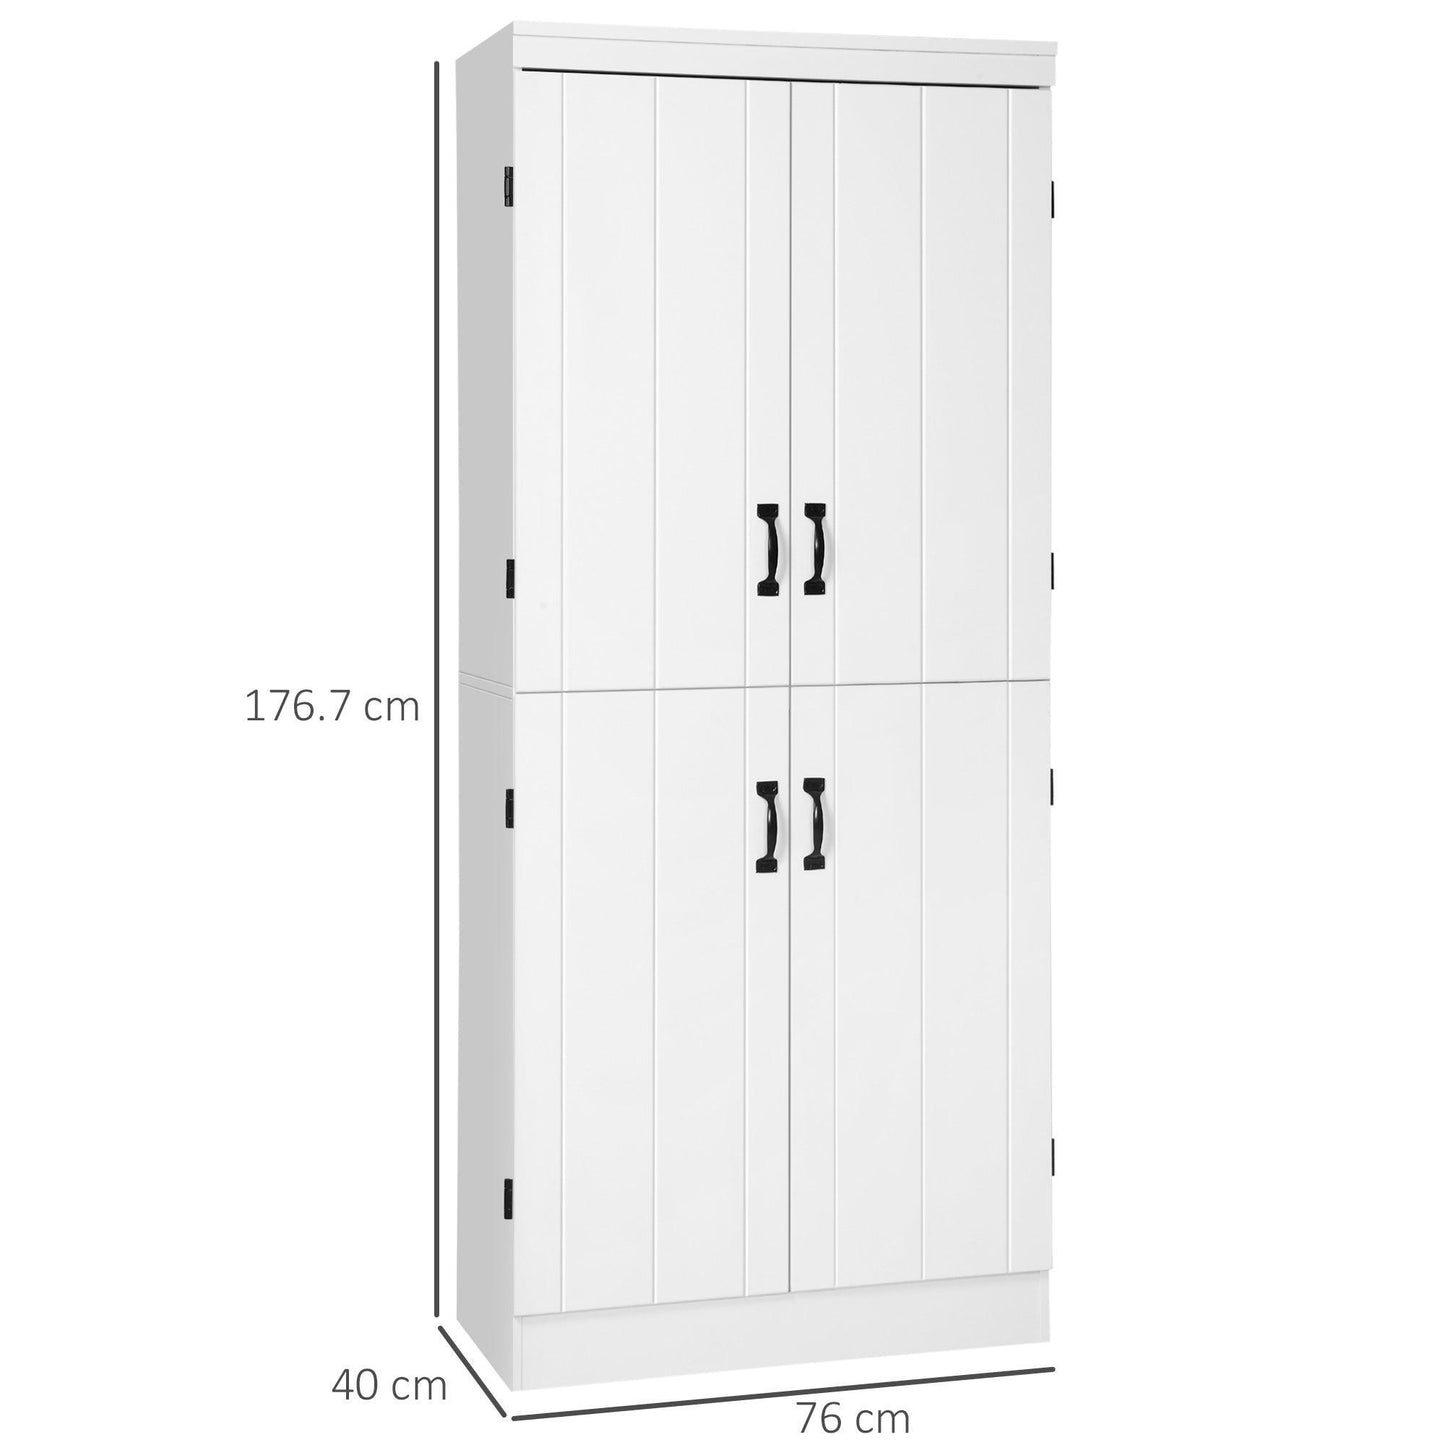 HOMCOM White Tall Kitchen Cupboard: 6-Tier Storage - ALL4U RETAILER LTD